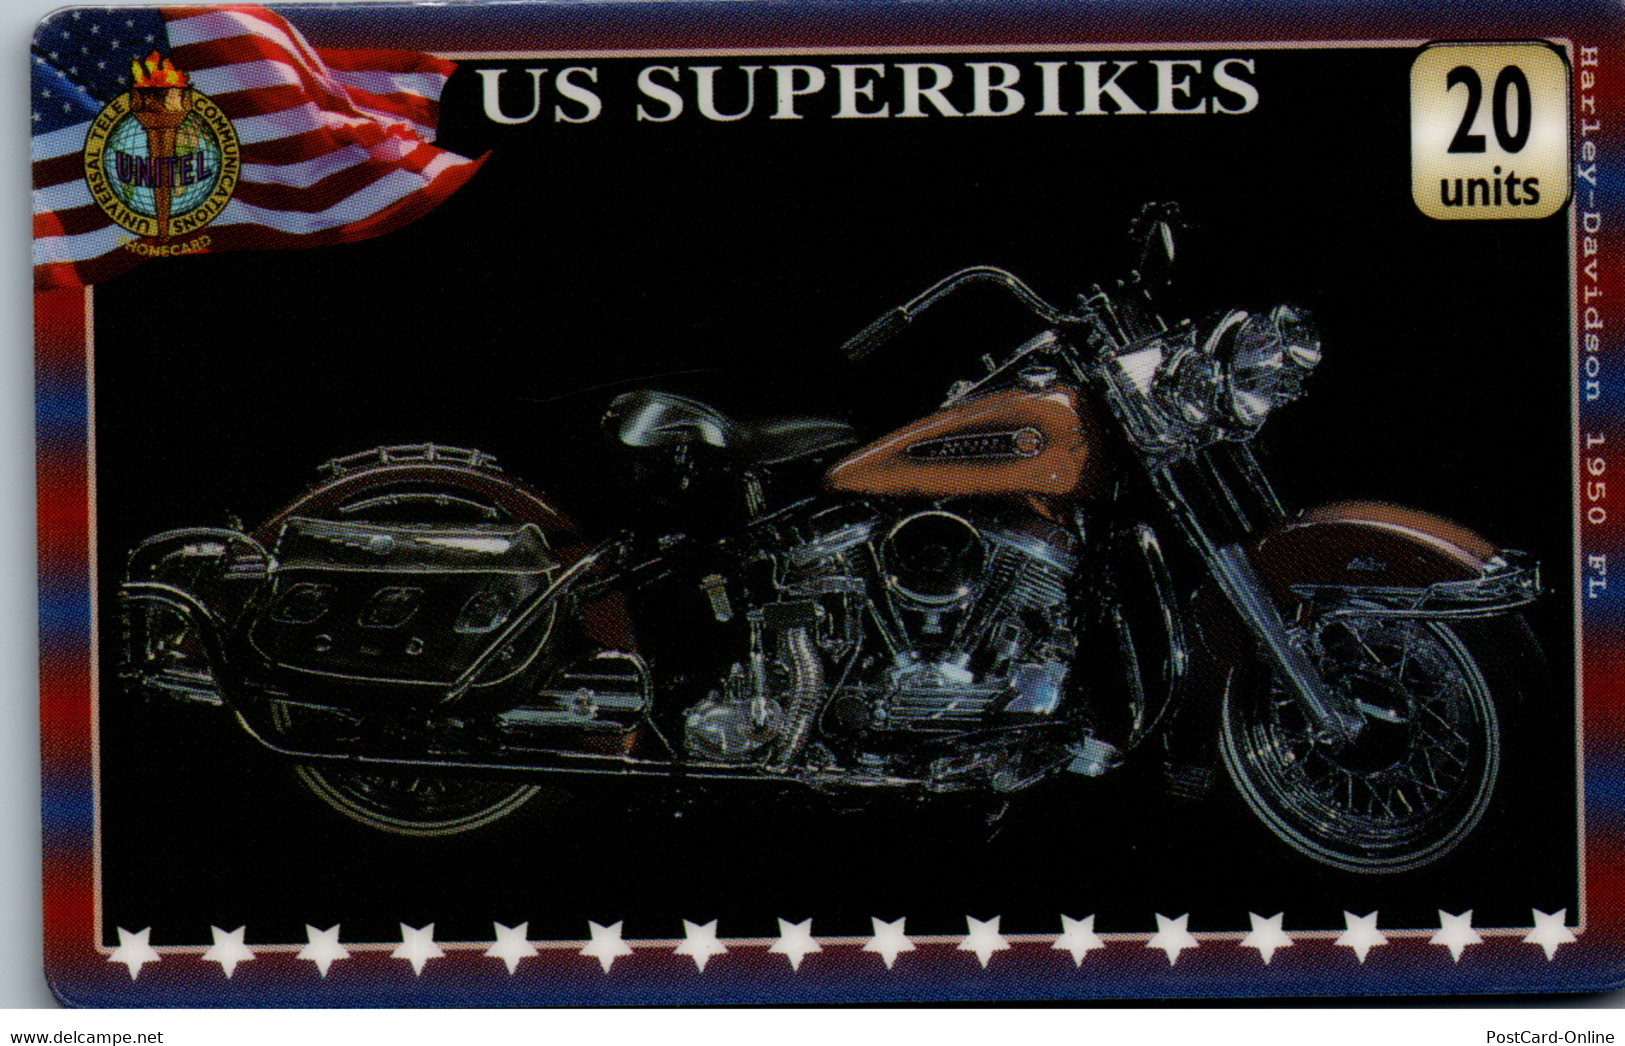 20333 - Großbritannien - UniTel , US Superbikes , Harley Davidson - BT Allgemein (Prepaid)